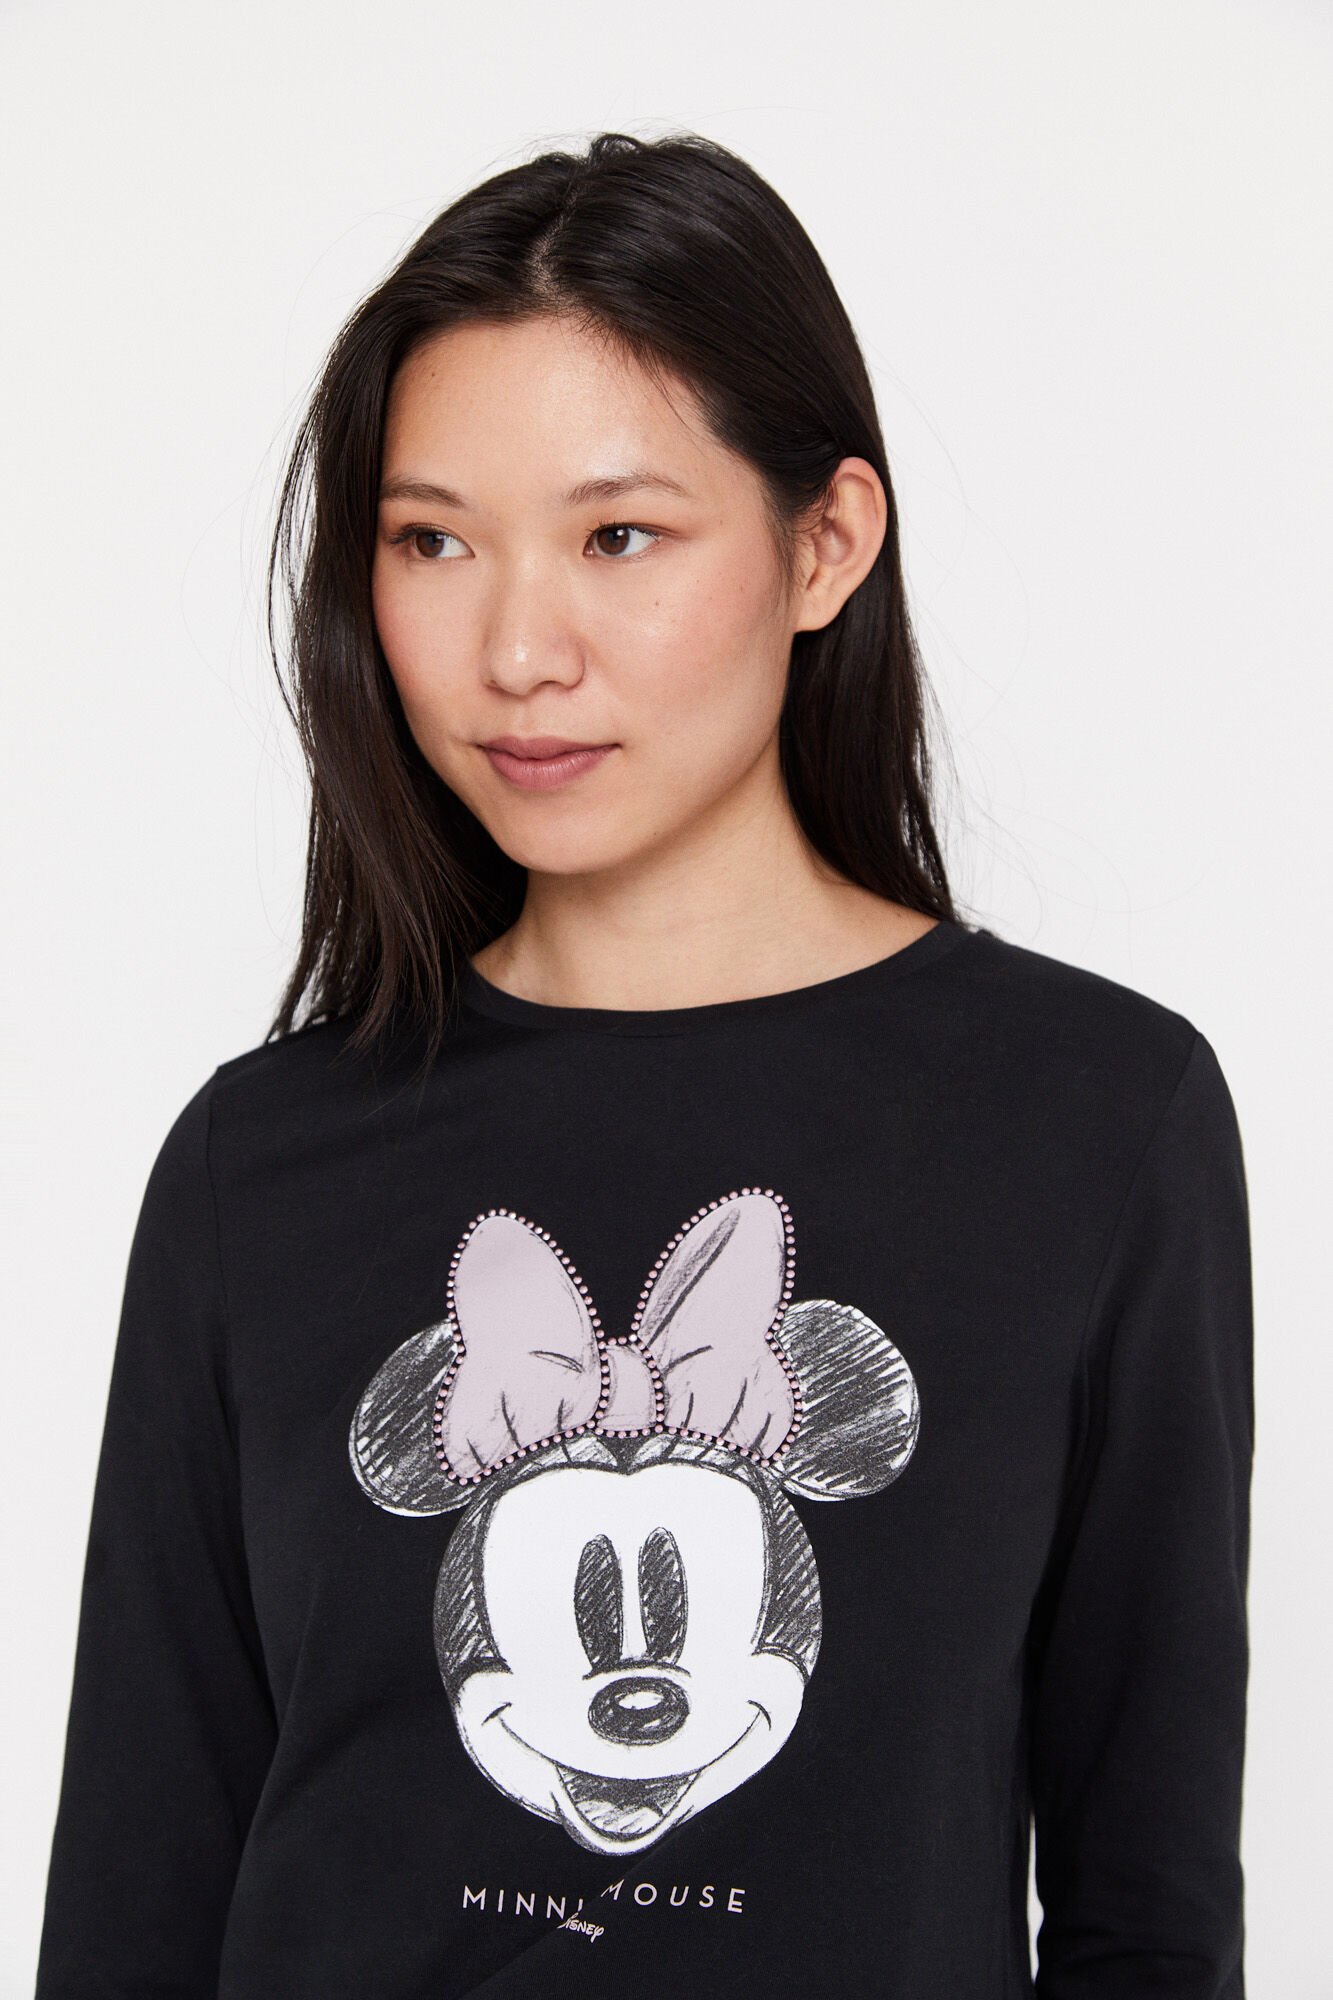 Camiseta Disney de mujer Original: Compra Online en Oferta